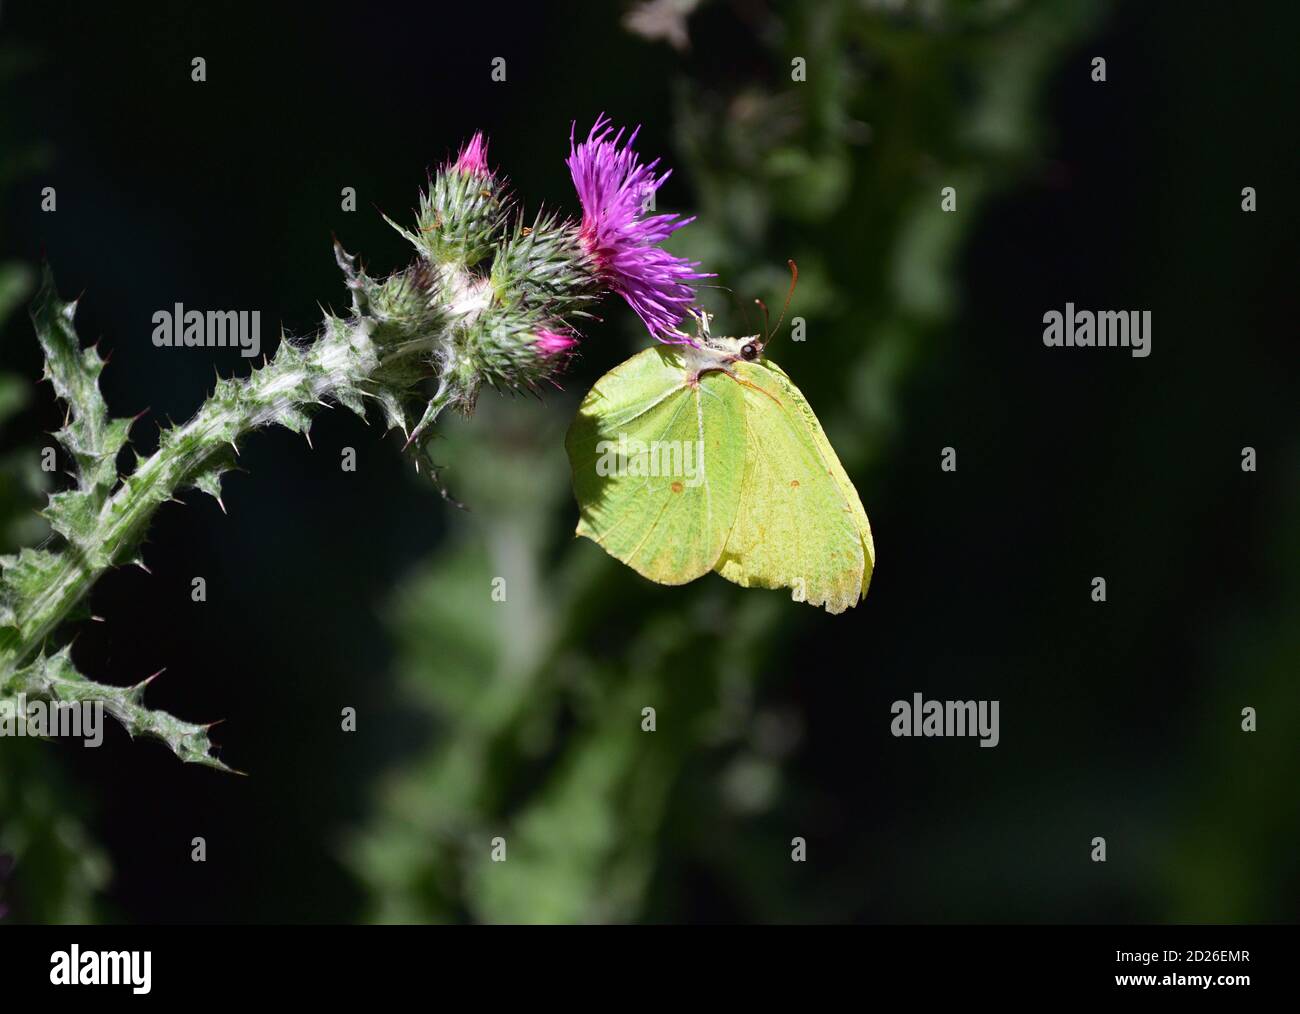 Gemeiner Schwefel-Schmetterling (Gonepteryx rhamni) auf Carduus-Blüten, auch bekannt als Plumeless Disteln. Stockfoto